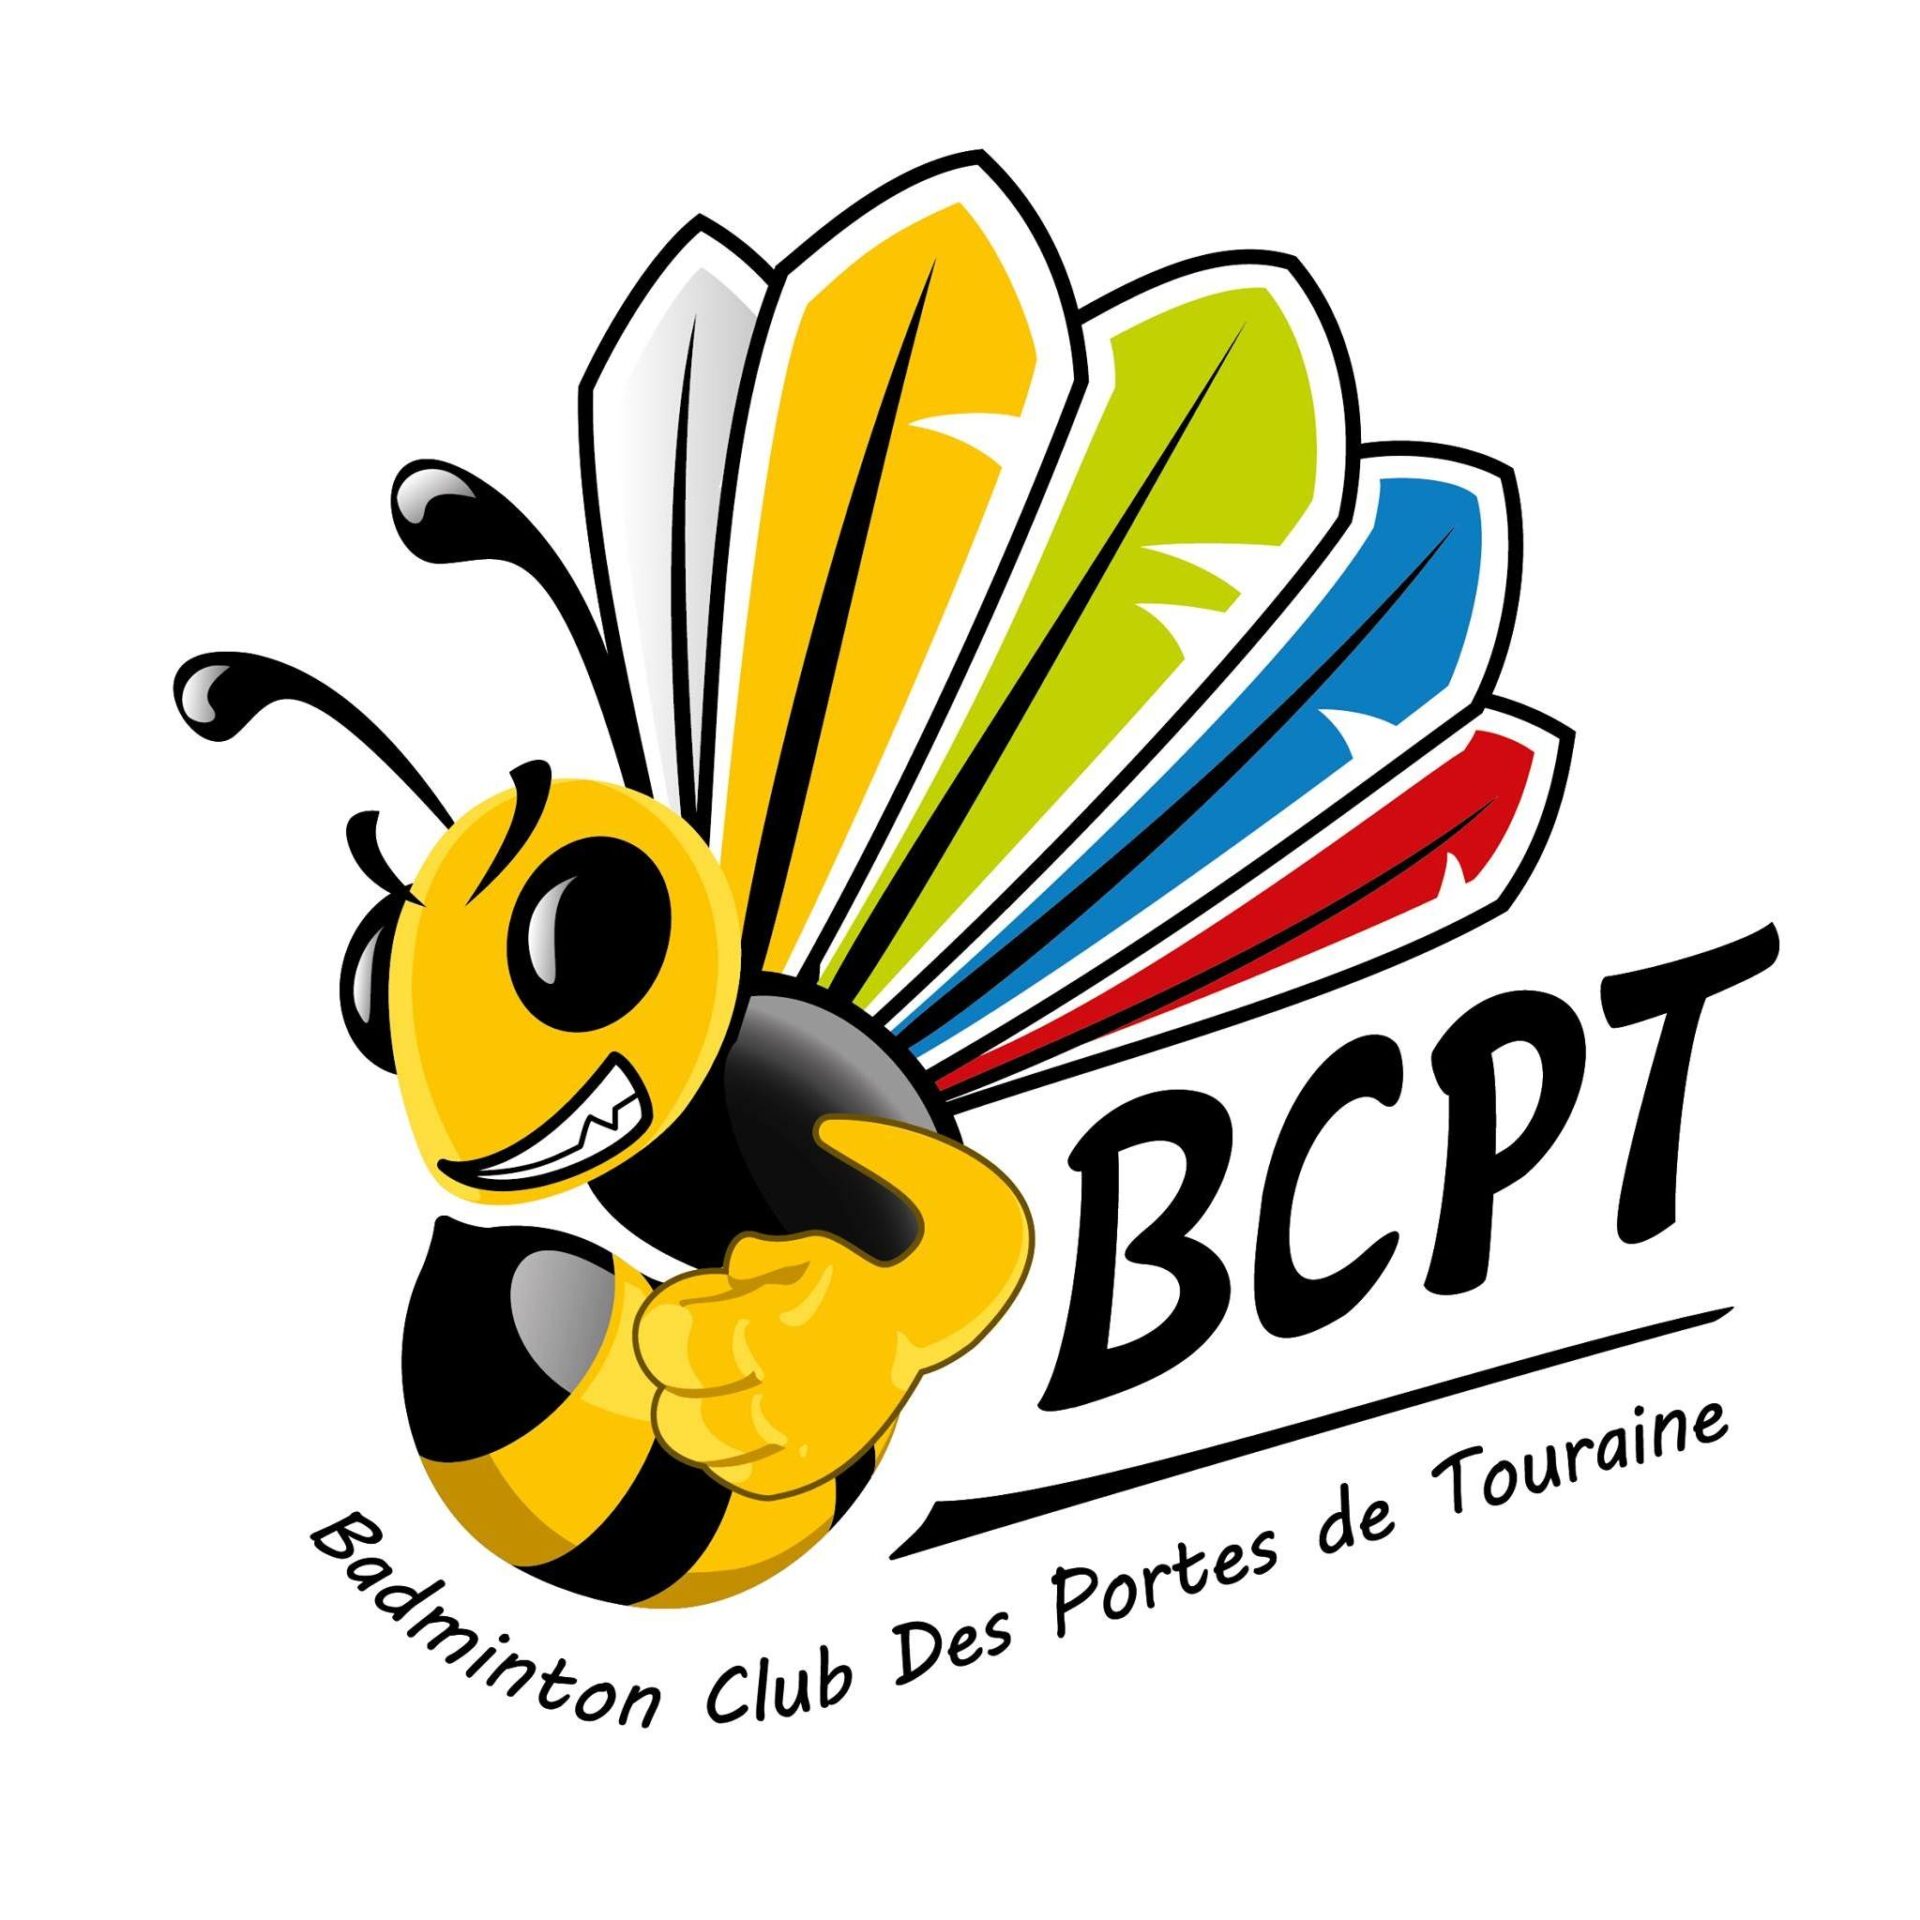 Badminton Club des Portes de Touraine (BCPT)